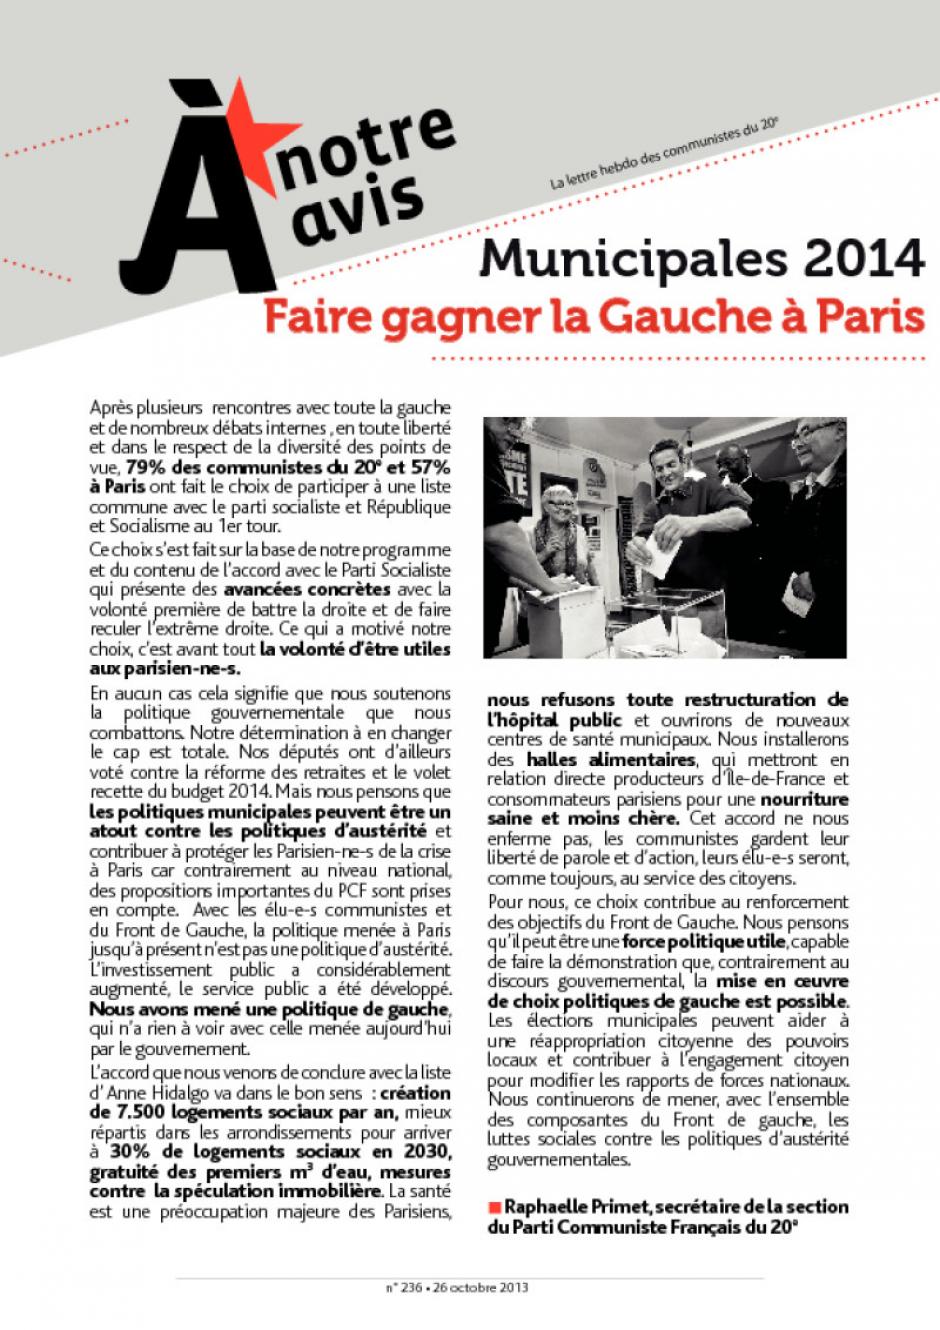 La lettre hebdo des communistes du 20e : Municipales 2014 Faire gagner la gauche à Paris